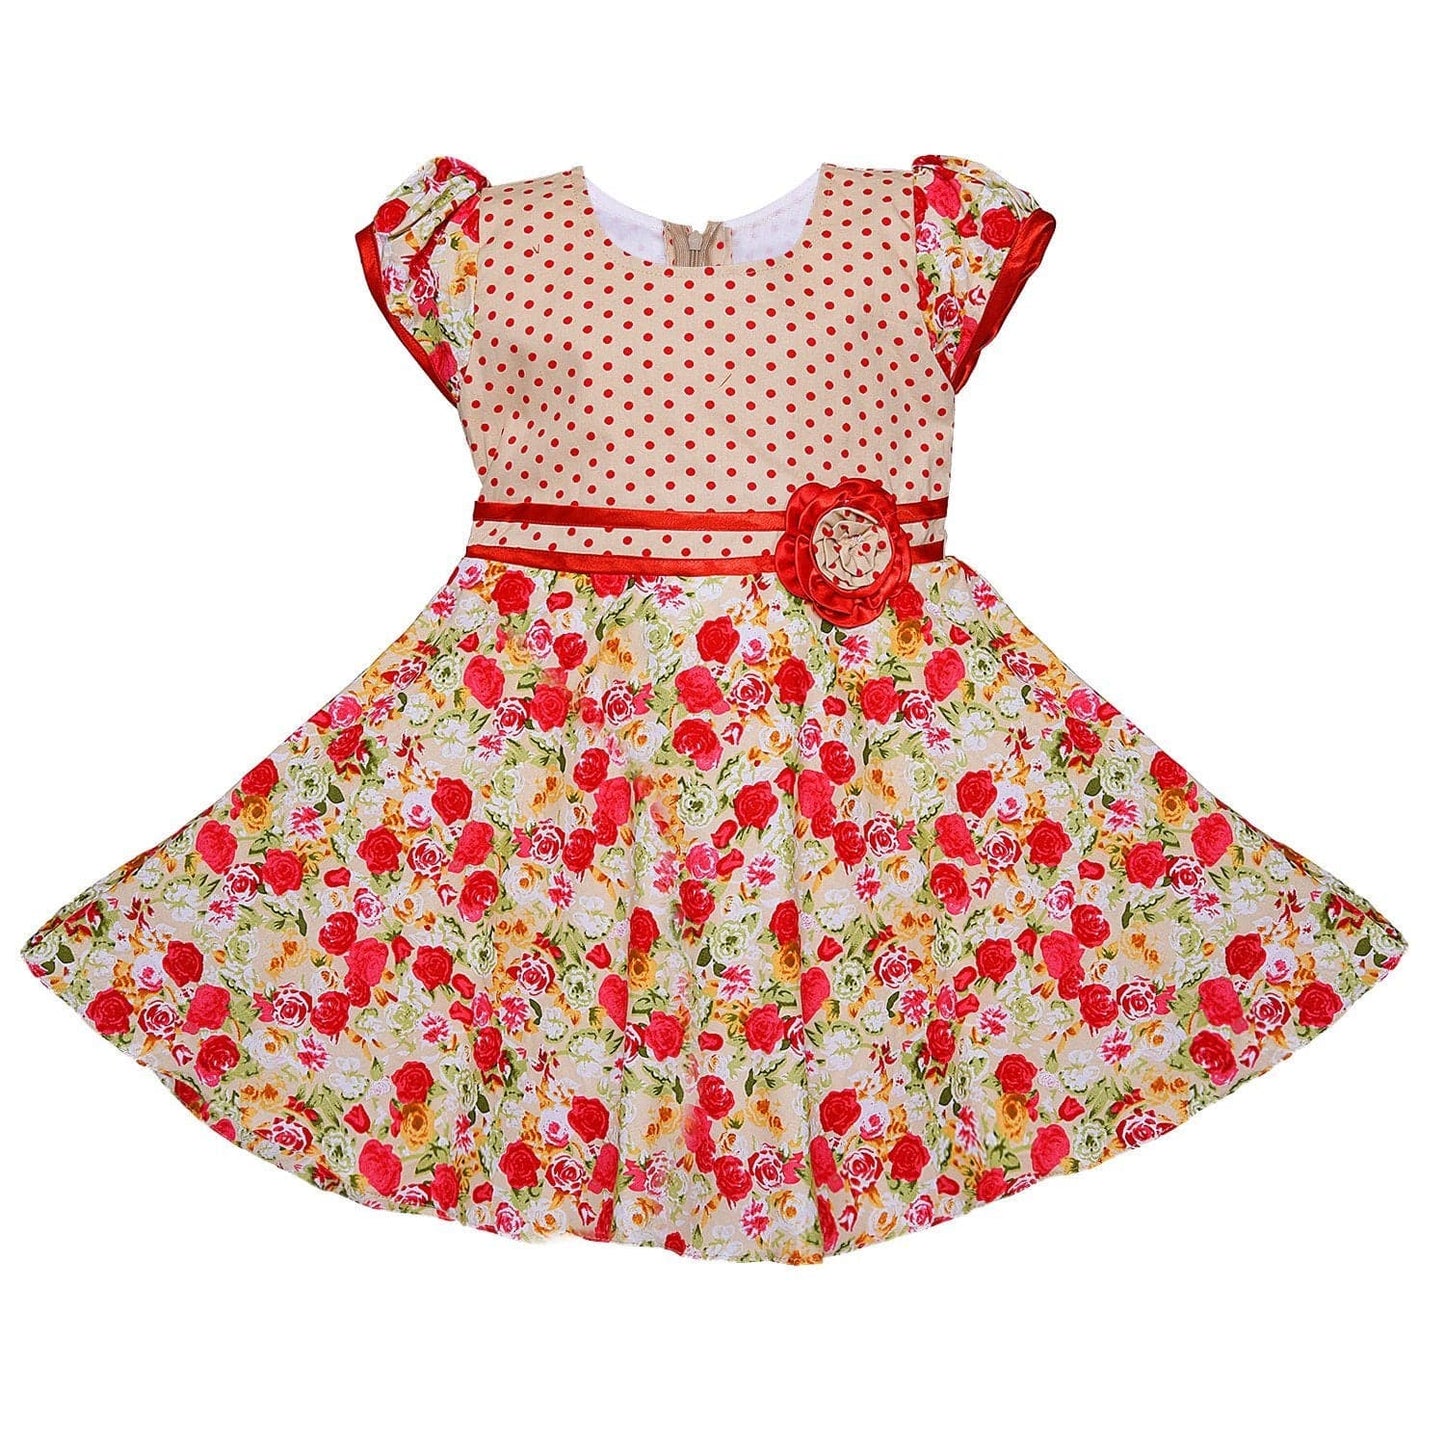 Baby Girls Cotton Frock Dress Ctn254rd - Wish Karo Cotton Wear - frocks Cotton Wear - baby dress